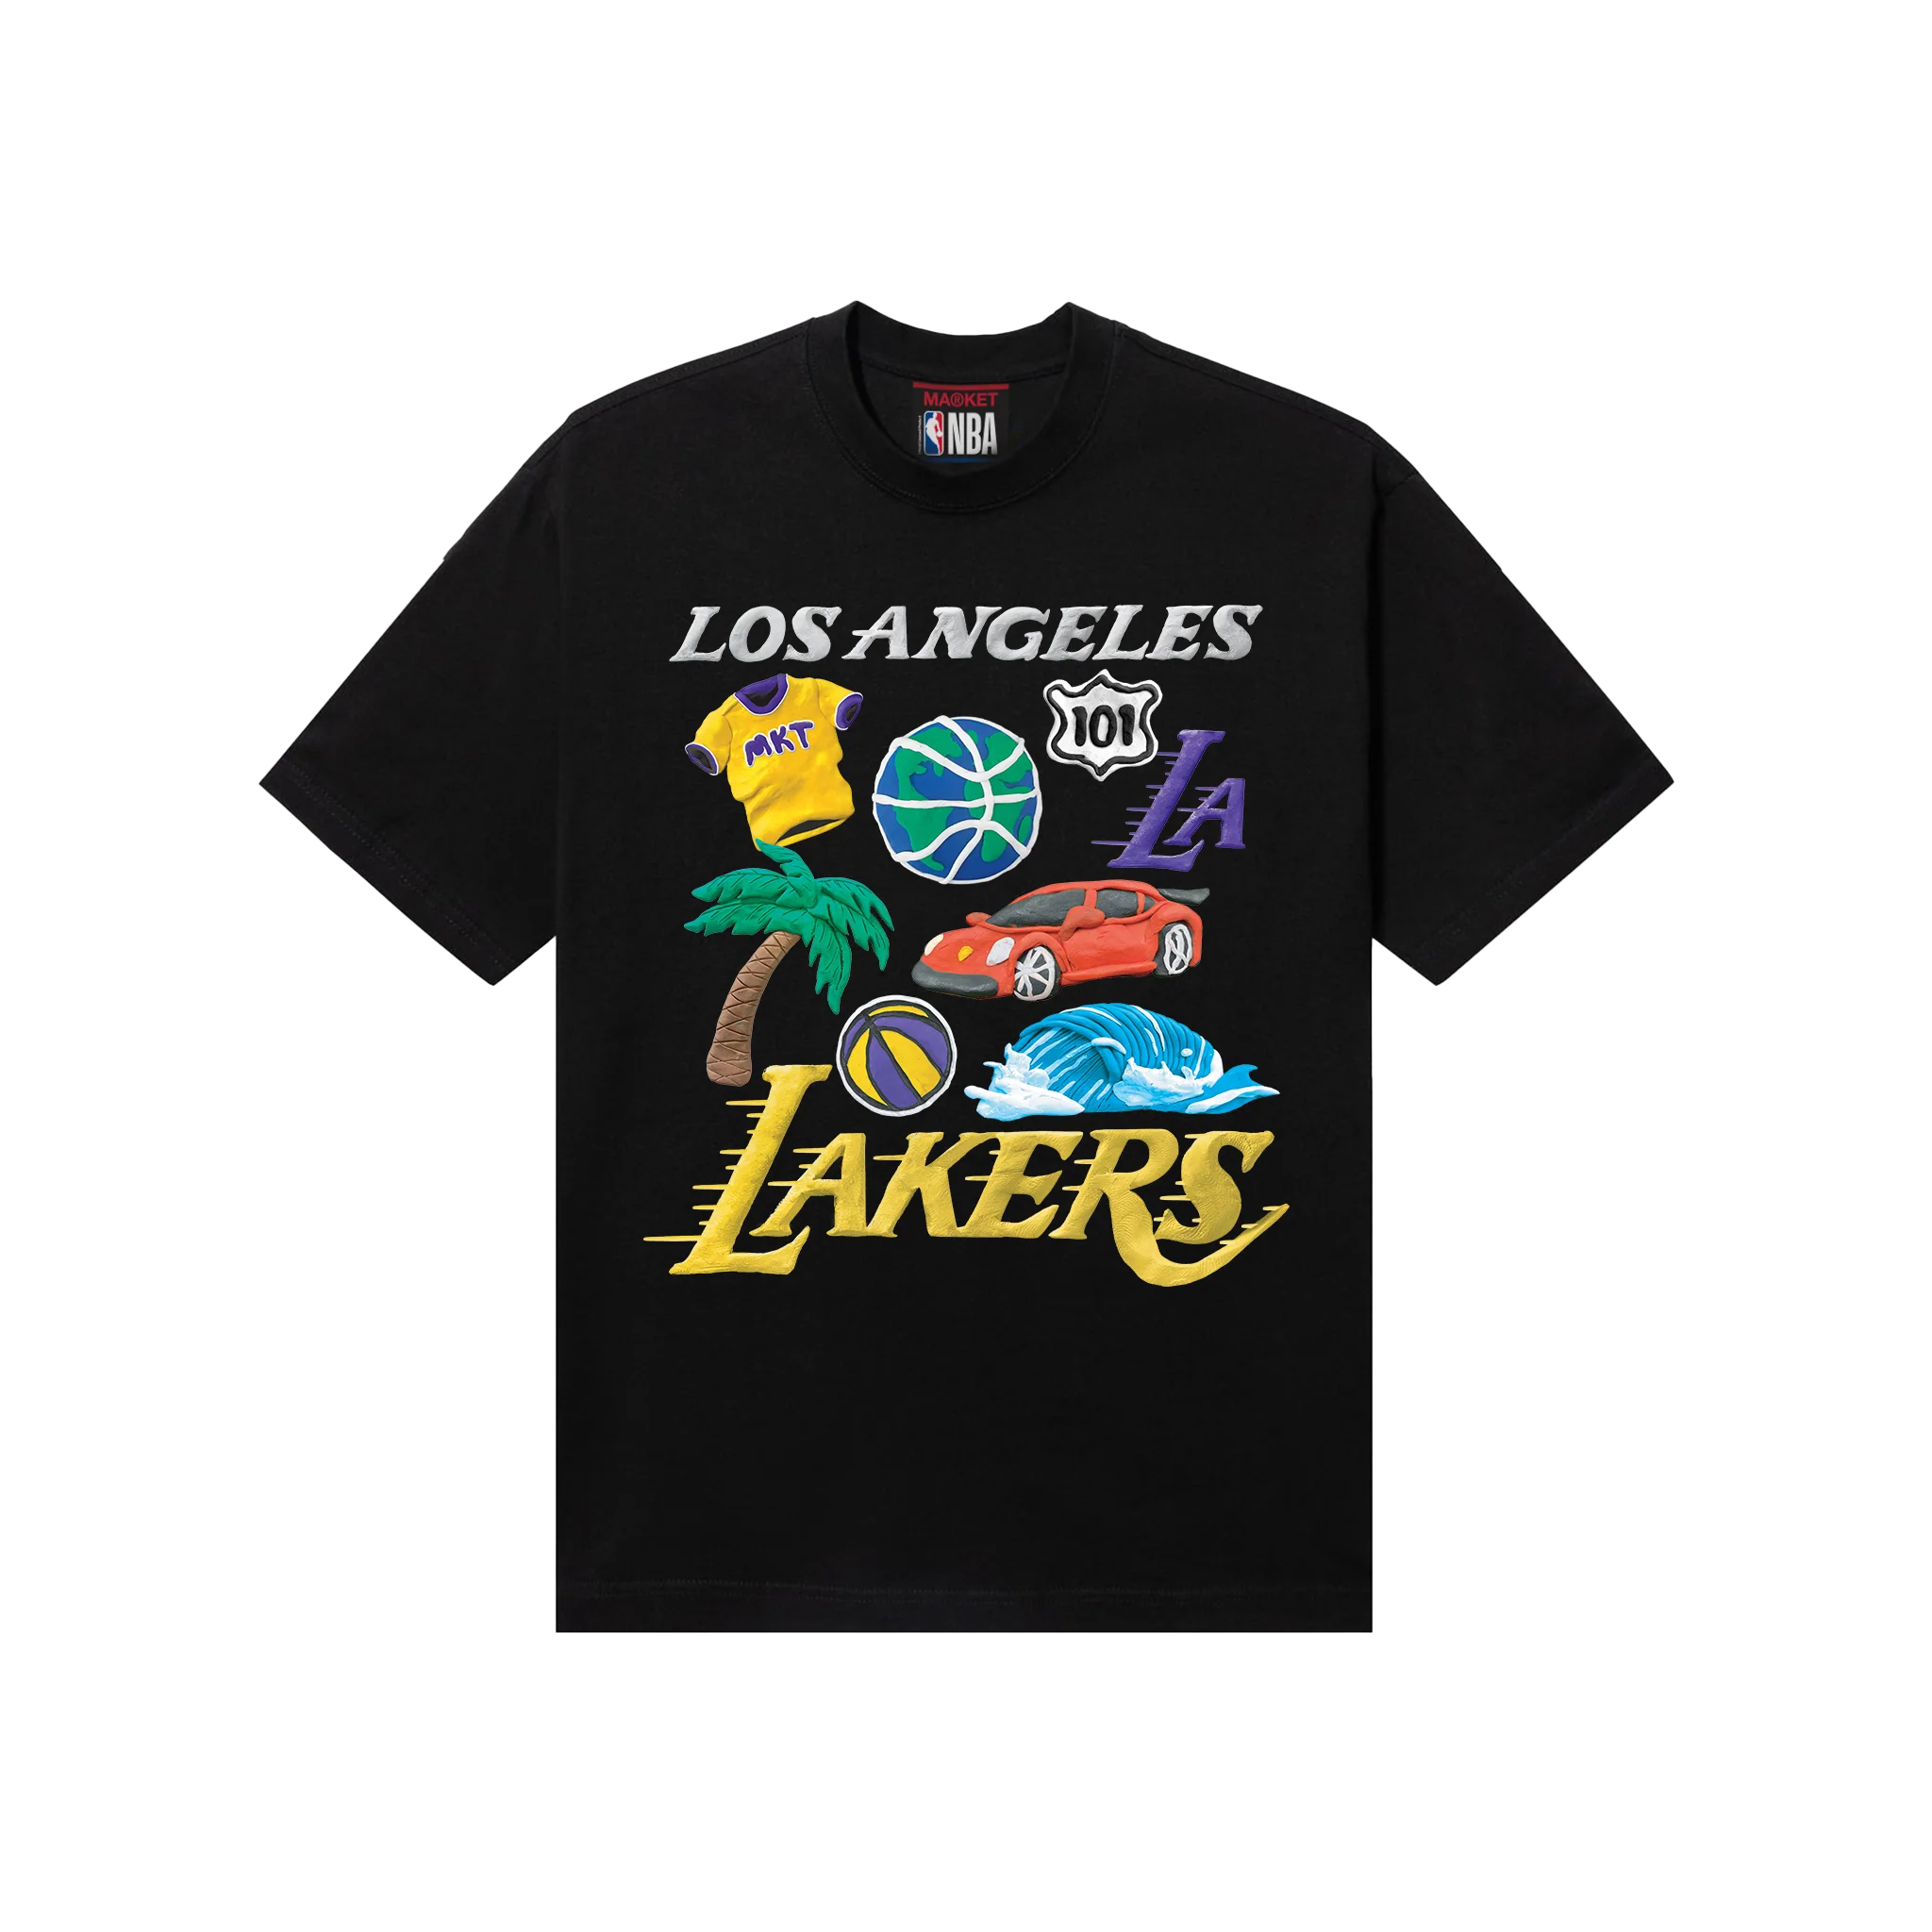 Lakers Tee Black